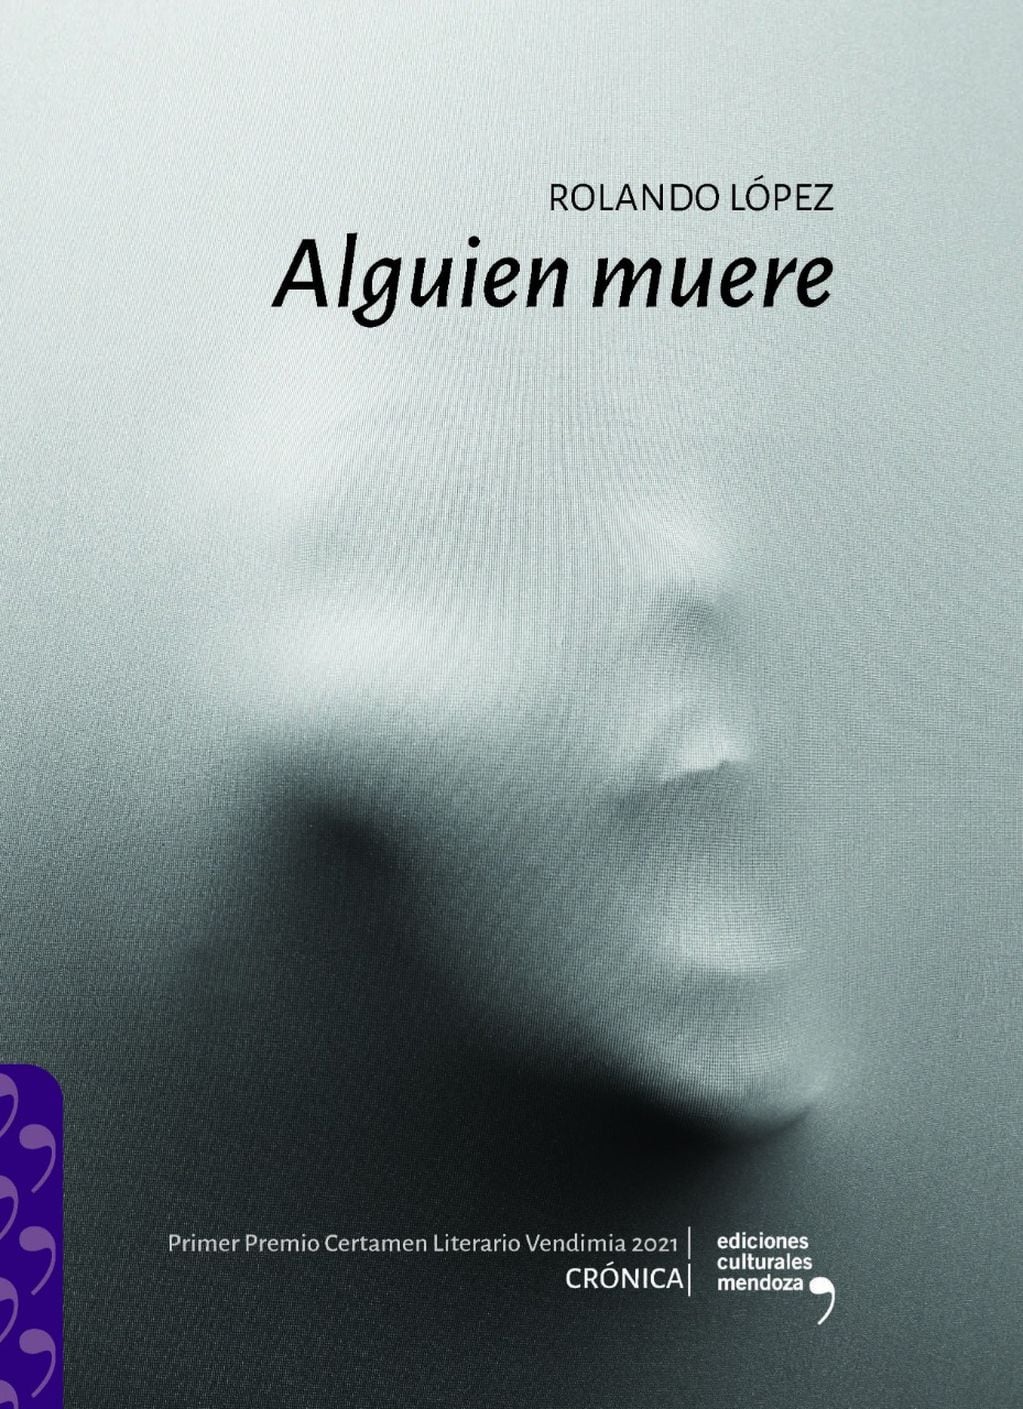 Alguien muere, el último libro del recordado Rolando López